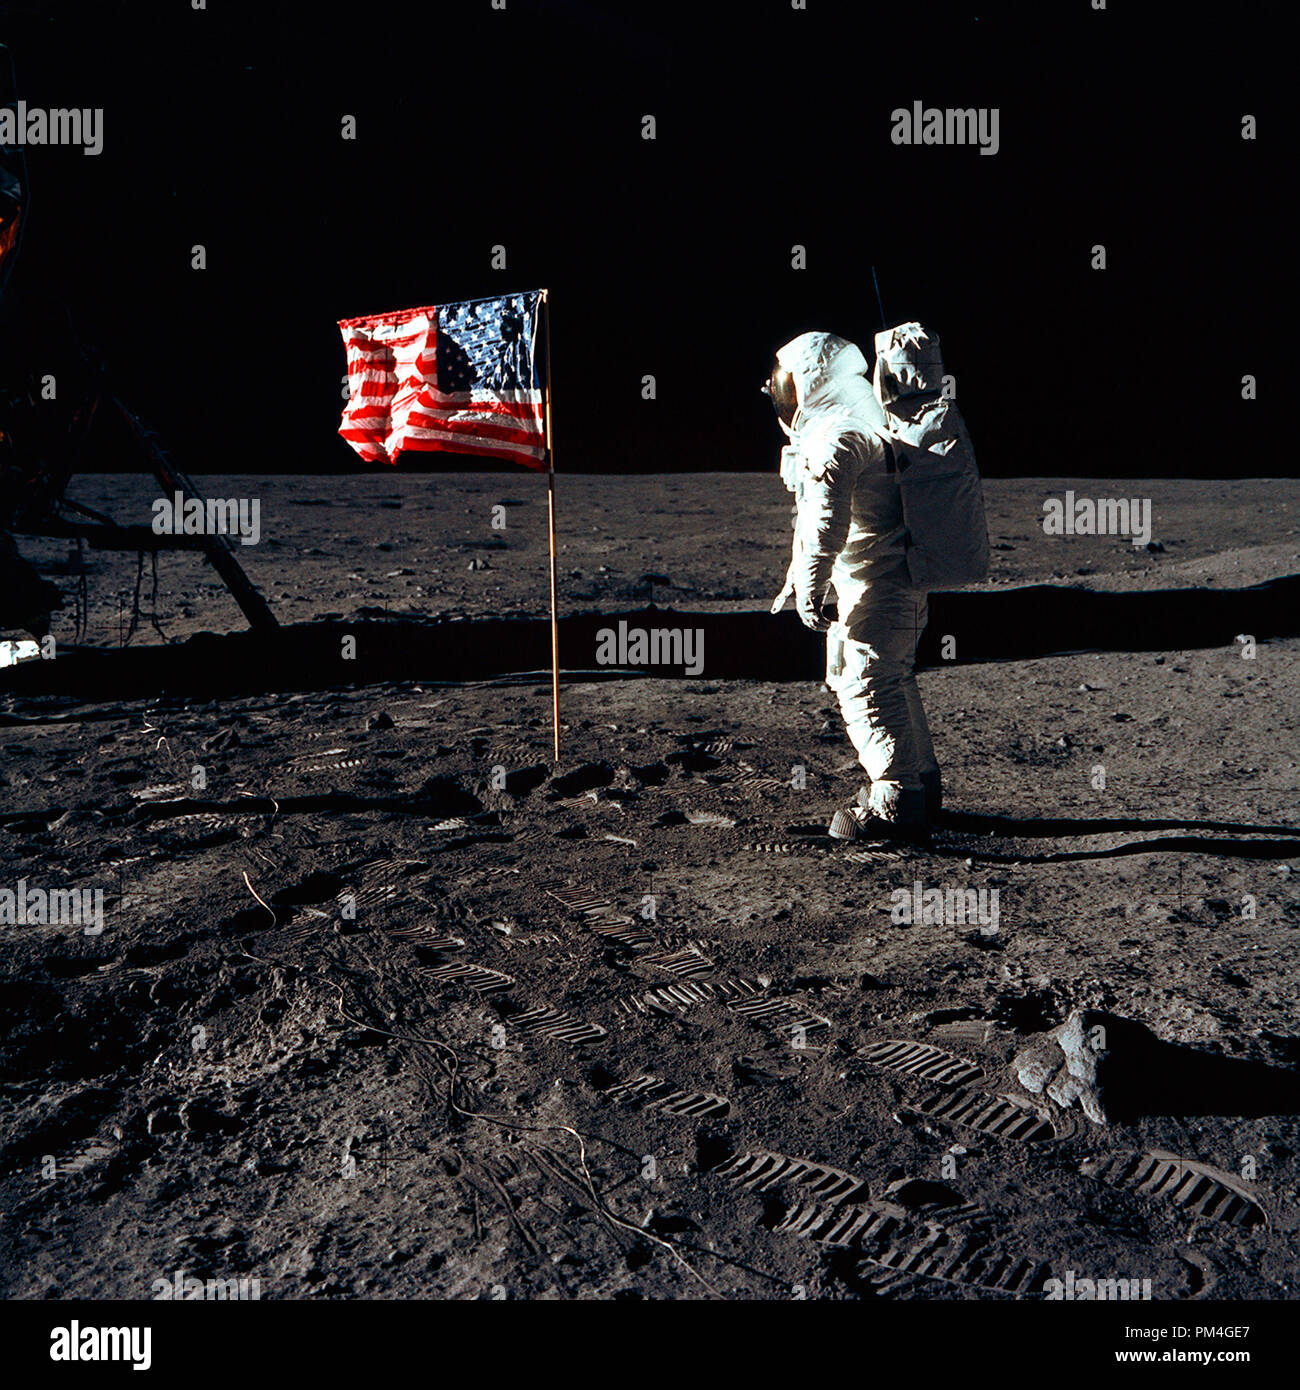 Astronaut Buzz Aldrin, Lunar Module pilot Der erste Mondlandung Mission, posiert für ein Foto neben dem Einsatz United Flaggenstaaten während einer Apollo 11 Extra Vehicular Activity (EVA) auf der Mondoberfläche. Die Landefähre (LM) ist auf der linken Seite und die fußspuren der Astronauten sind deutlich im Boden des Mondes sichtbar. A. in der Astronaut Neil Armstrong, Kommandant, nahm dieses Bild mit einem 70 mm Hasselblad Mondoberfläche Kamera, 20. Juli 1969. Datei Referenz Nr. 1001 012 THA Stockfoto